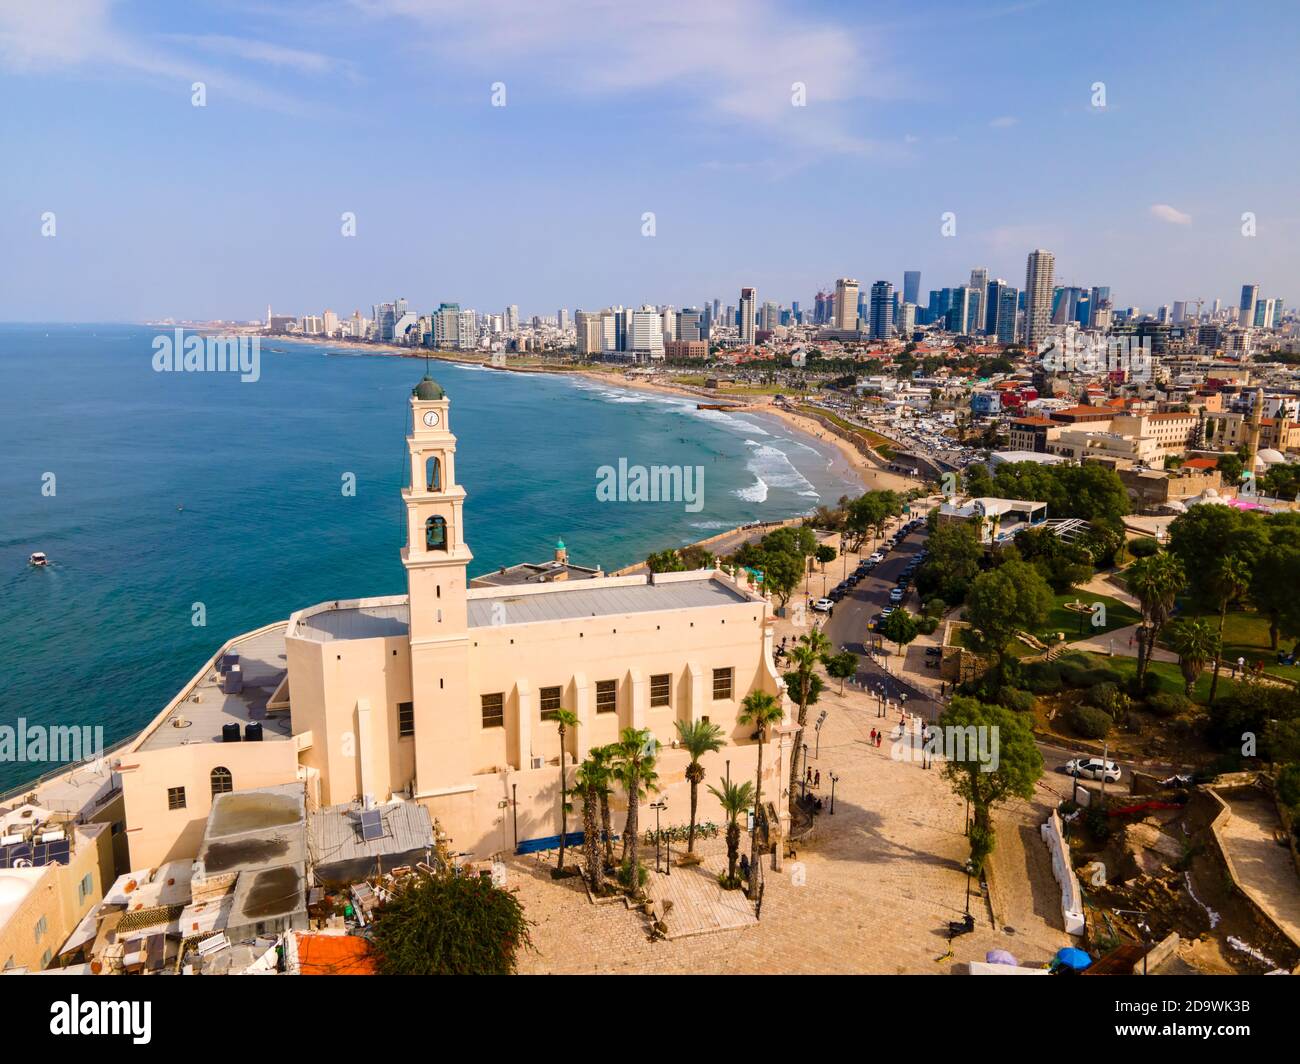 Tel Aviv - Jaffa, Blick von oben. Moderne Stadt mit Wolkenkratzern und der Altstadt. Vogelperspektive. Israel, der nahe Osten. Luftaufnahmen Stockfoto